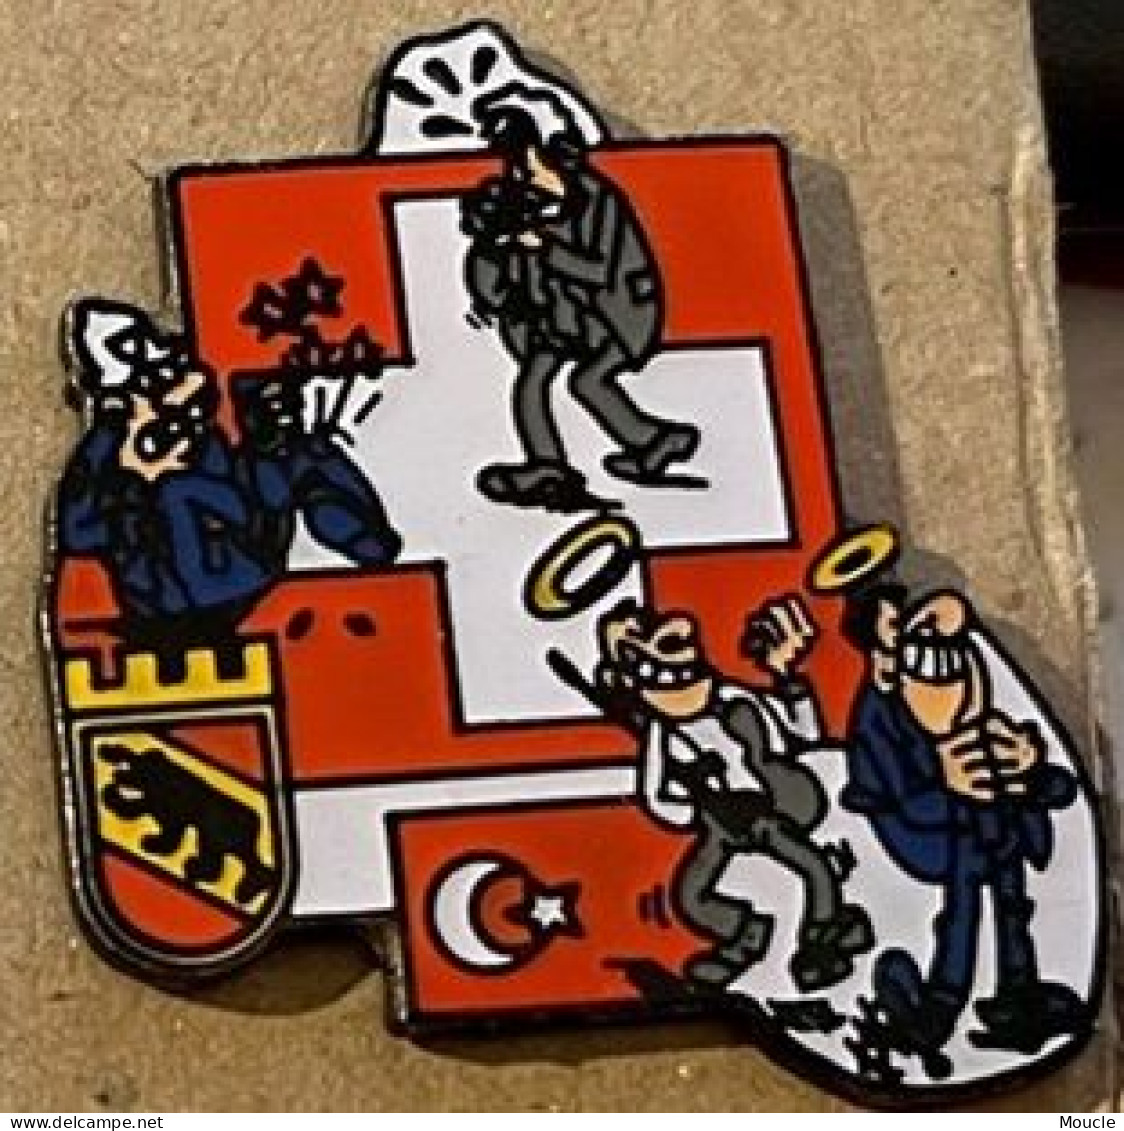 POLICE VILLE DE BERNE SUISSE - STADT POLIZEI BERN - SCHWEIZ - POLICIA - SWITZERLAND - TURC  -  (33) - Politie